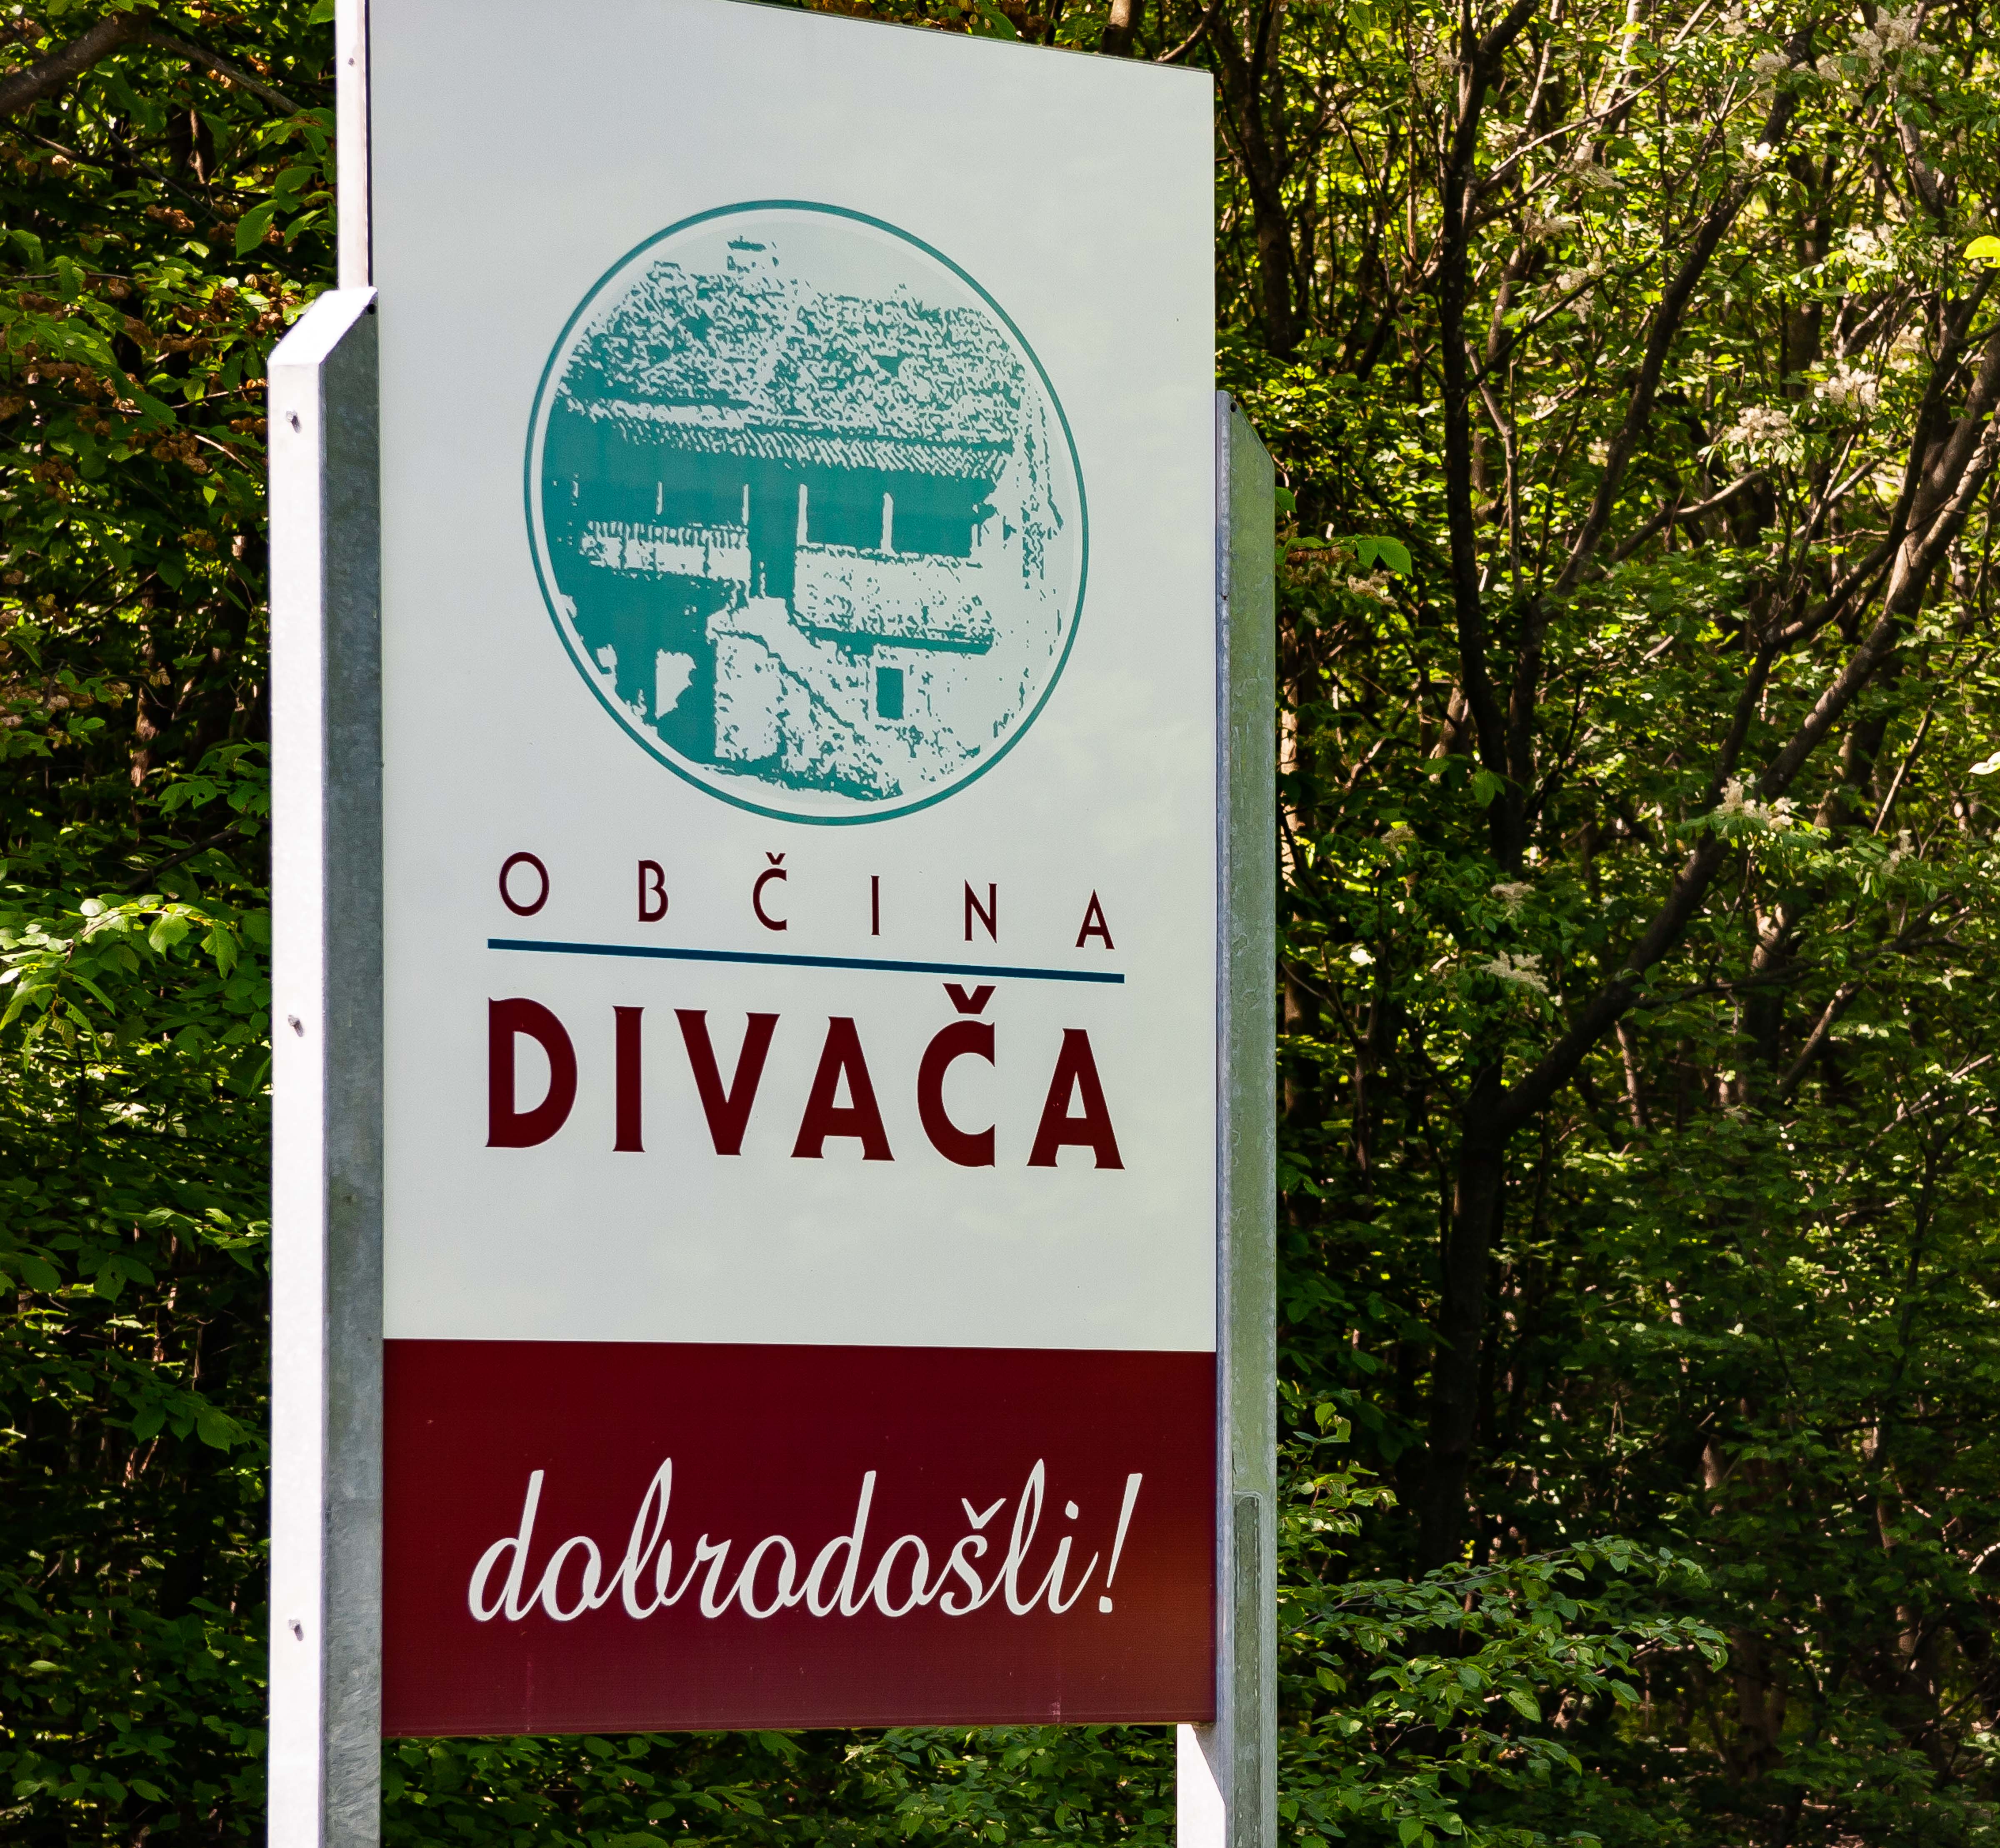 Slovenia, Divaca Prov, Dobrodosli Obcina Divaca, 2006, IMG 6915